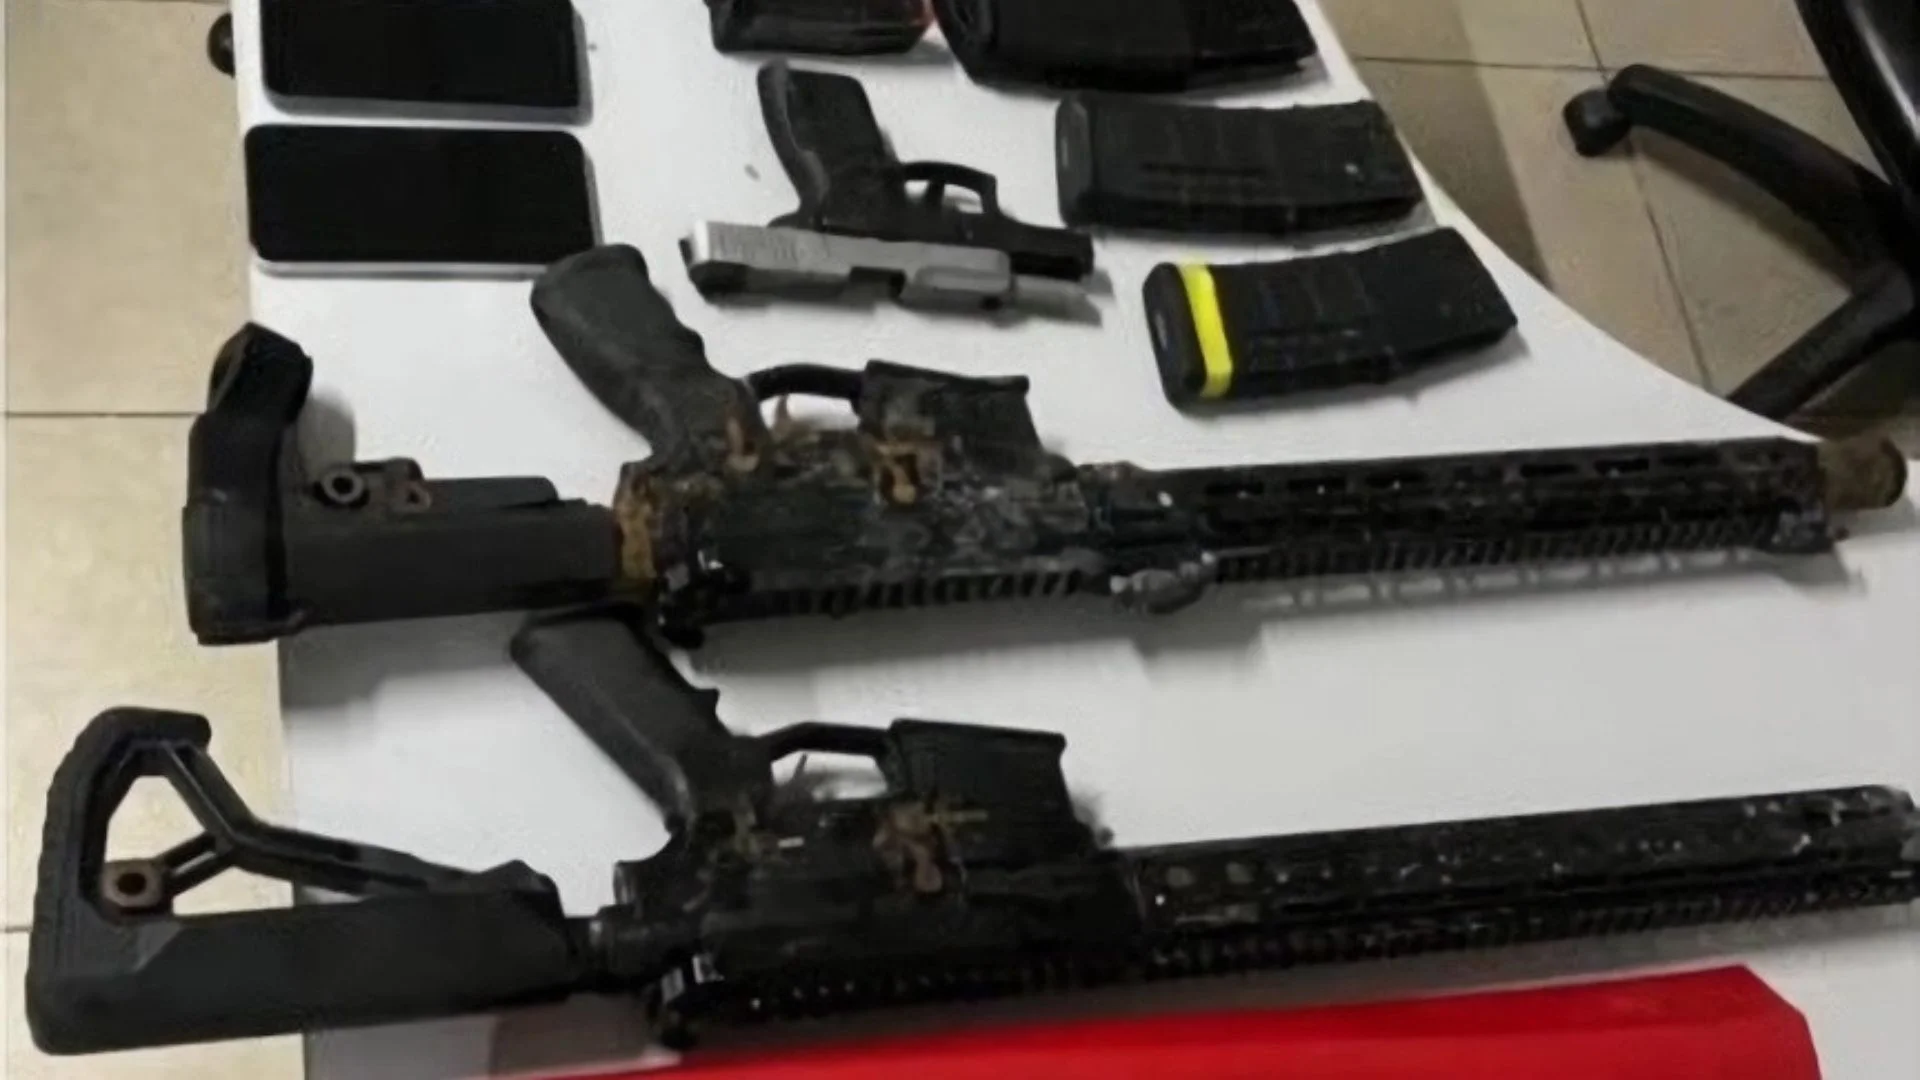 operação prende traficante de armas com fuzis e munições em Vitória de Santo Antão. Foto: Divugação